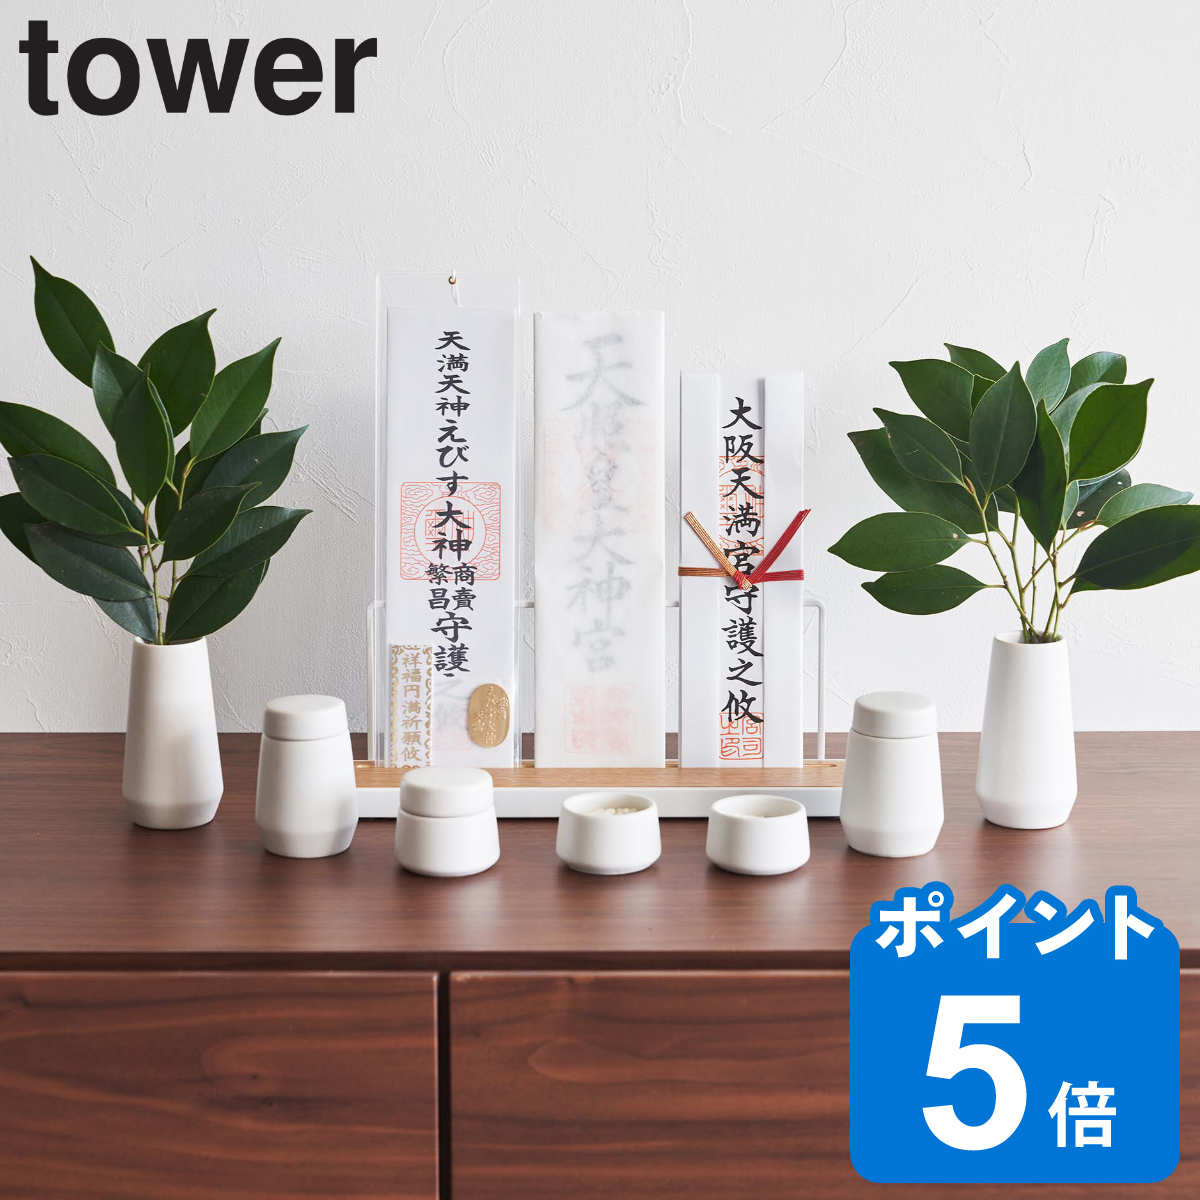 山崎実業 tower 神具 タワー 7点セット ホワイト